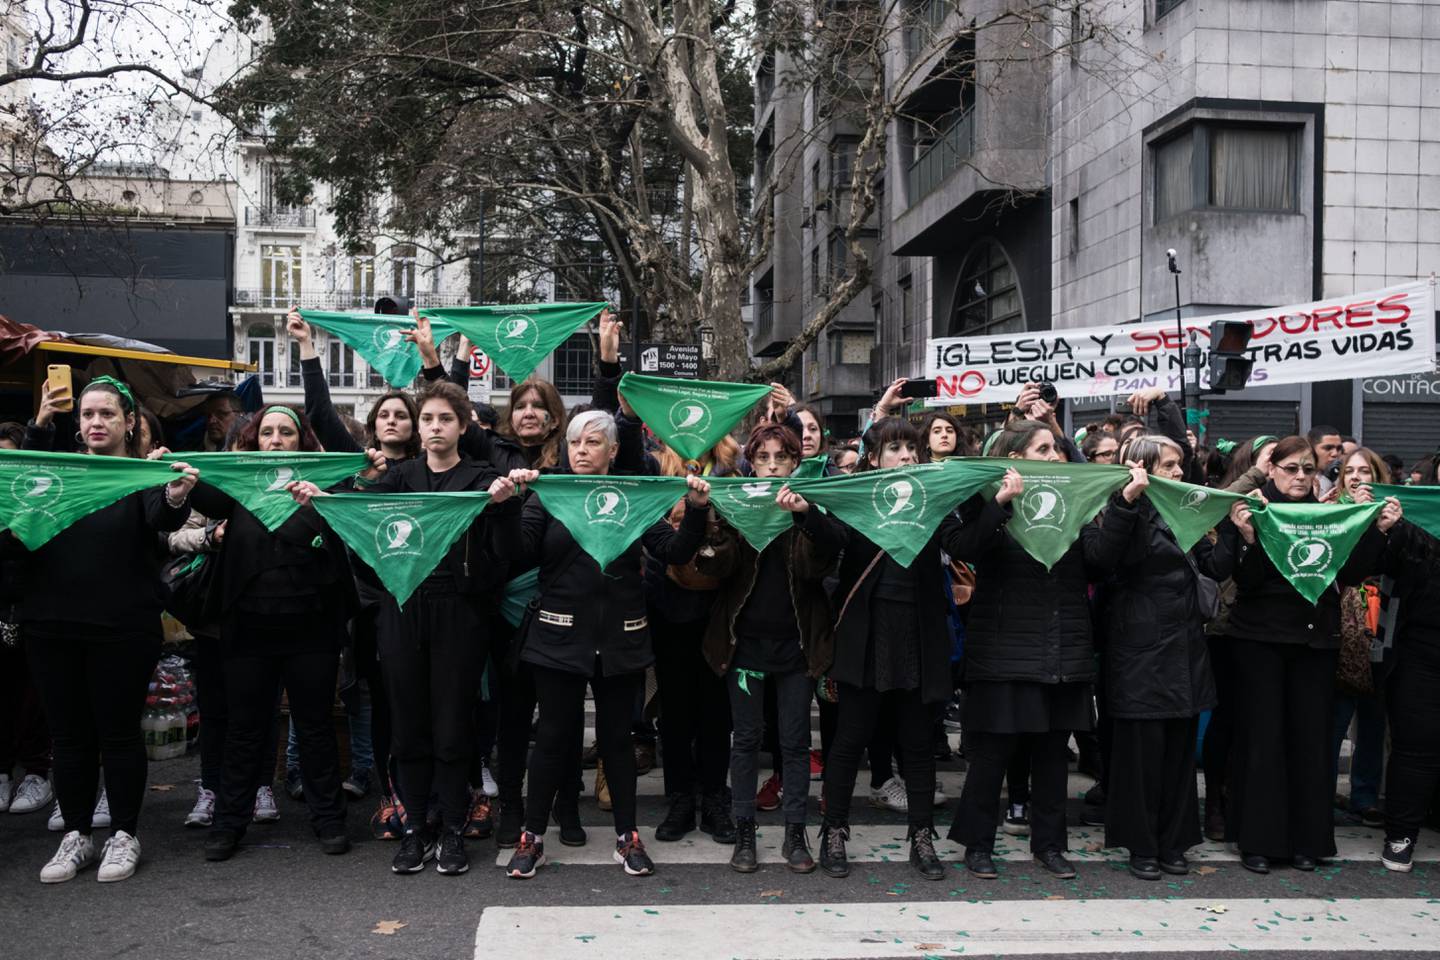 Manifestantes a favor del aborto sostienen pañuelos verdes durante una protesta frente al edificio del Congreso Nacional en Buenos Aires, Argentina, el miércoles 8 de agosto de 2018. Fotógrafo: Erica Canepa/Bloomberg